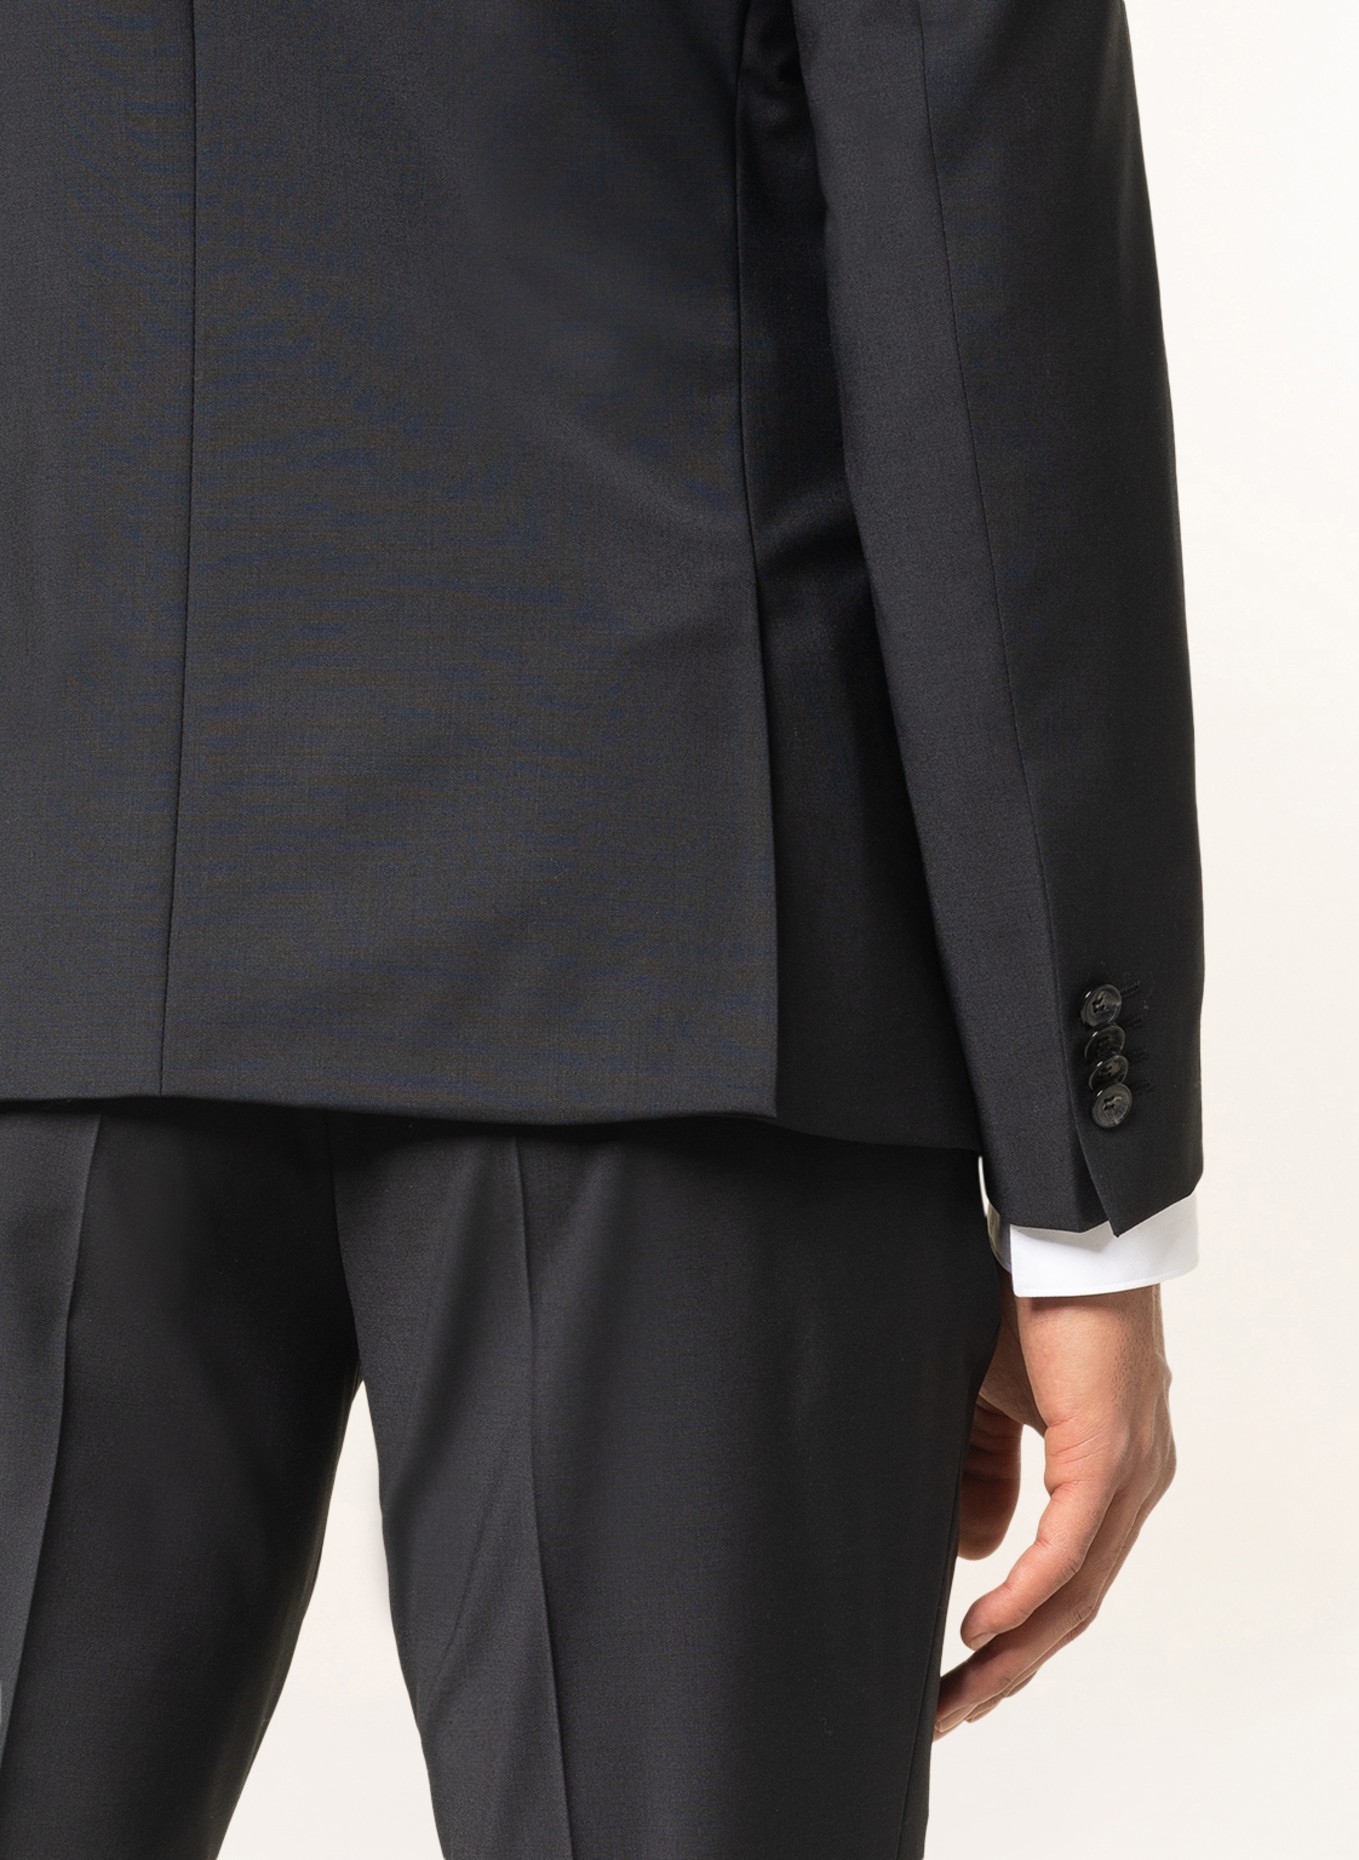 CG - CLUB of GENTS Suit jacket IAN super slim fit  , Color: 90 SCHWARZ (Image 7)